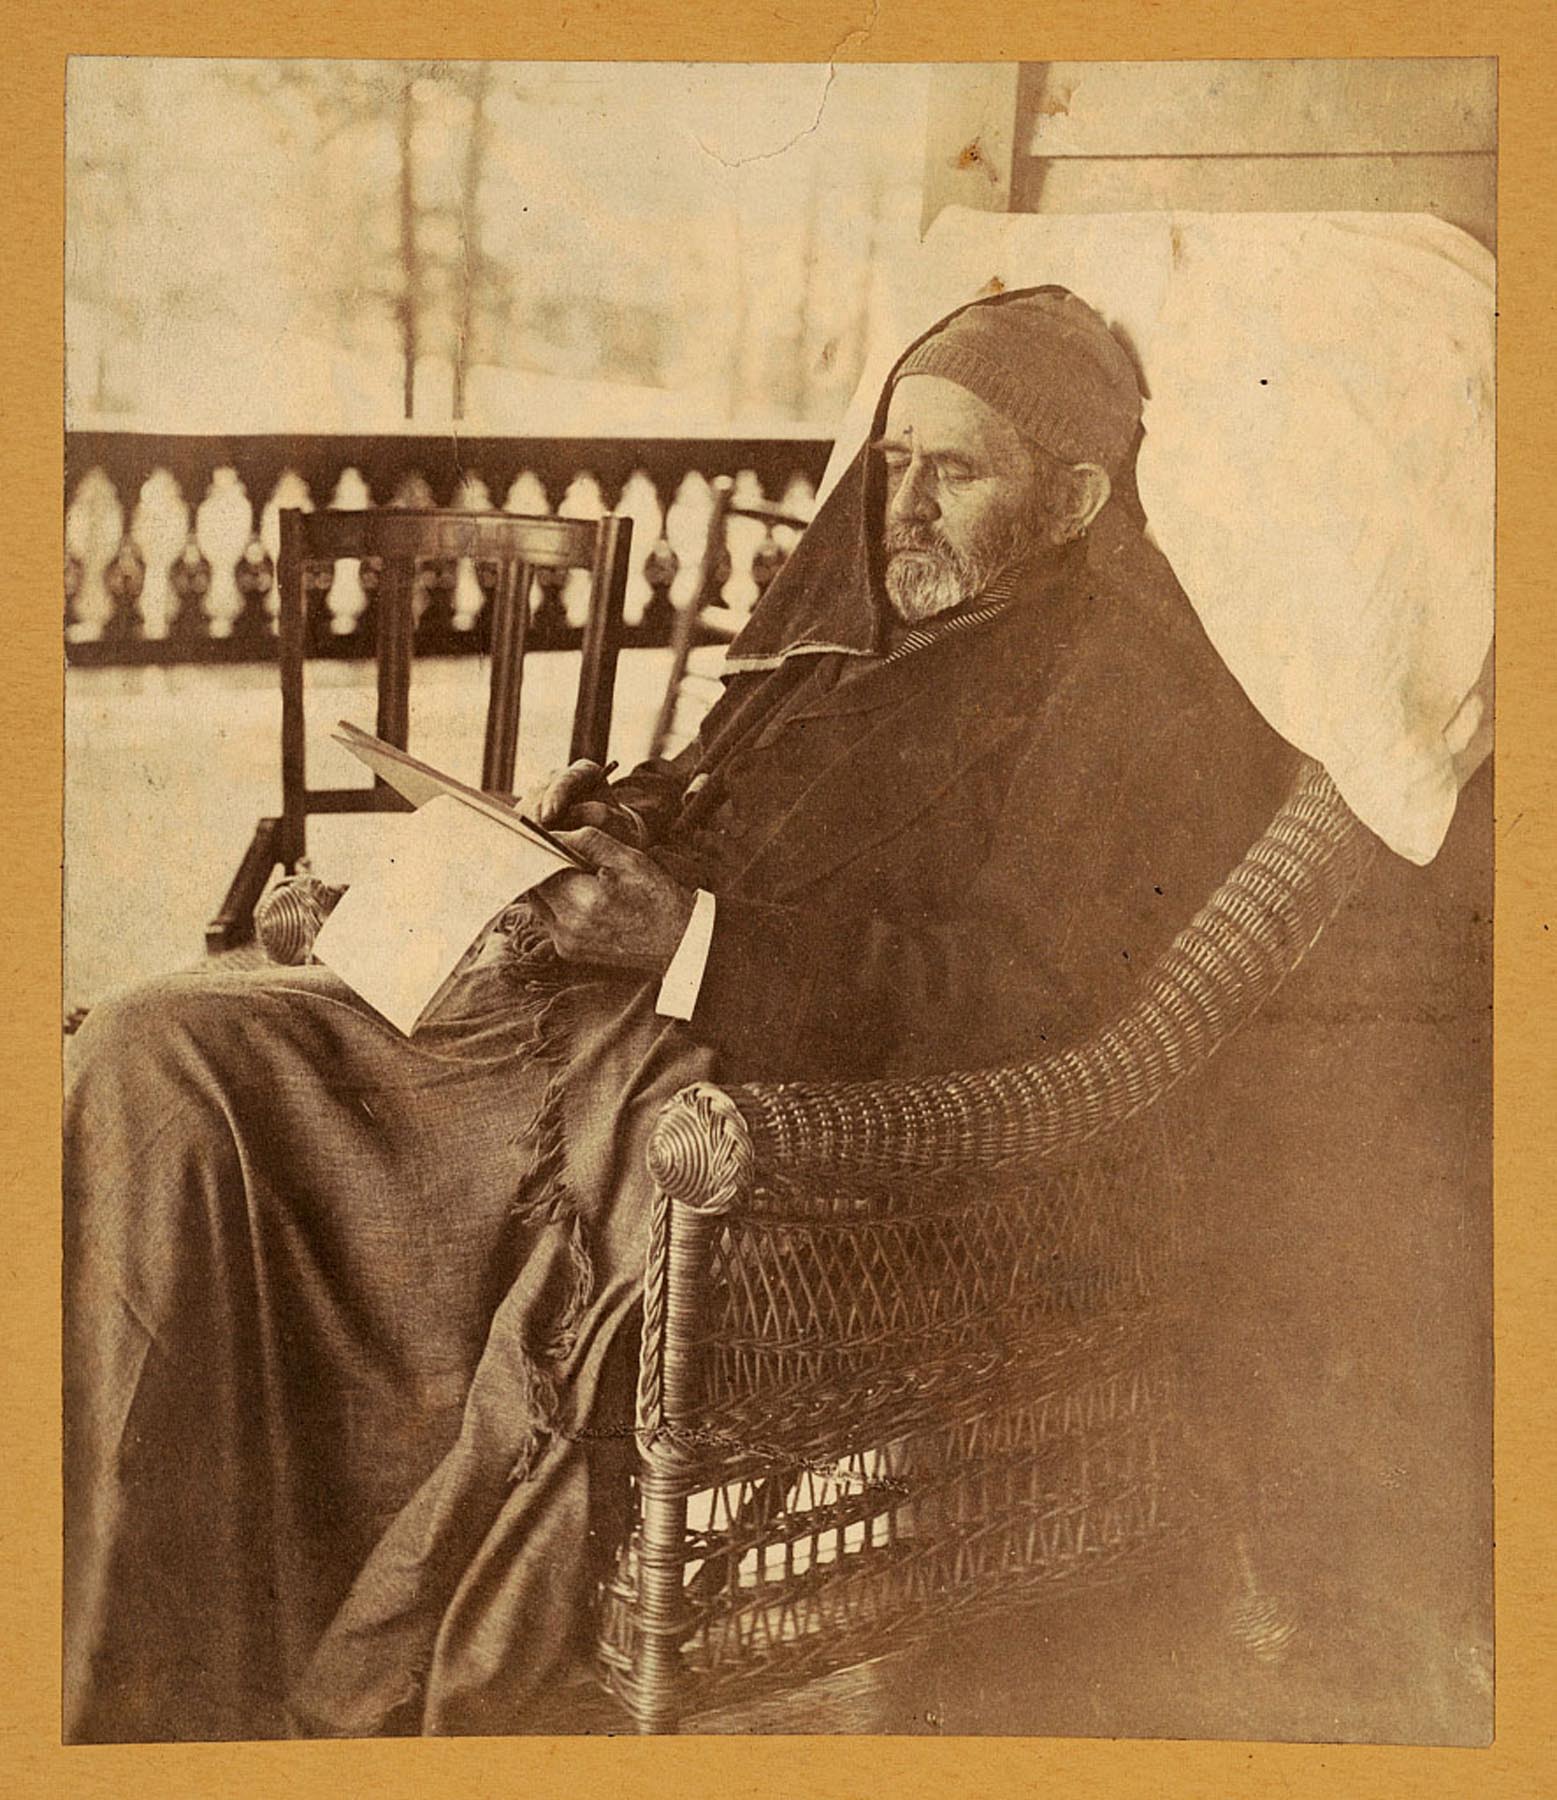 Gen. U.S. Grant writing his memoirs, Mount McGregor 